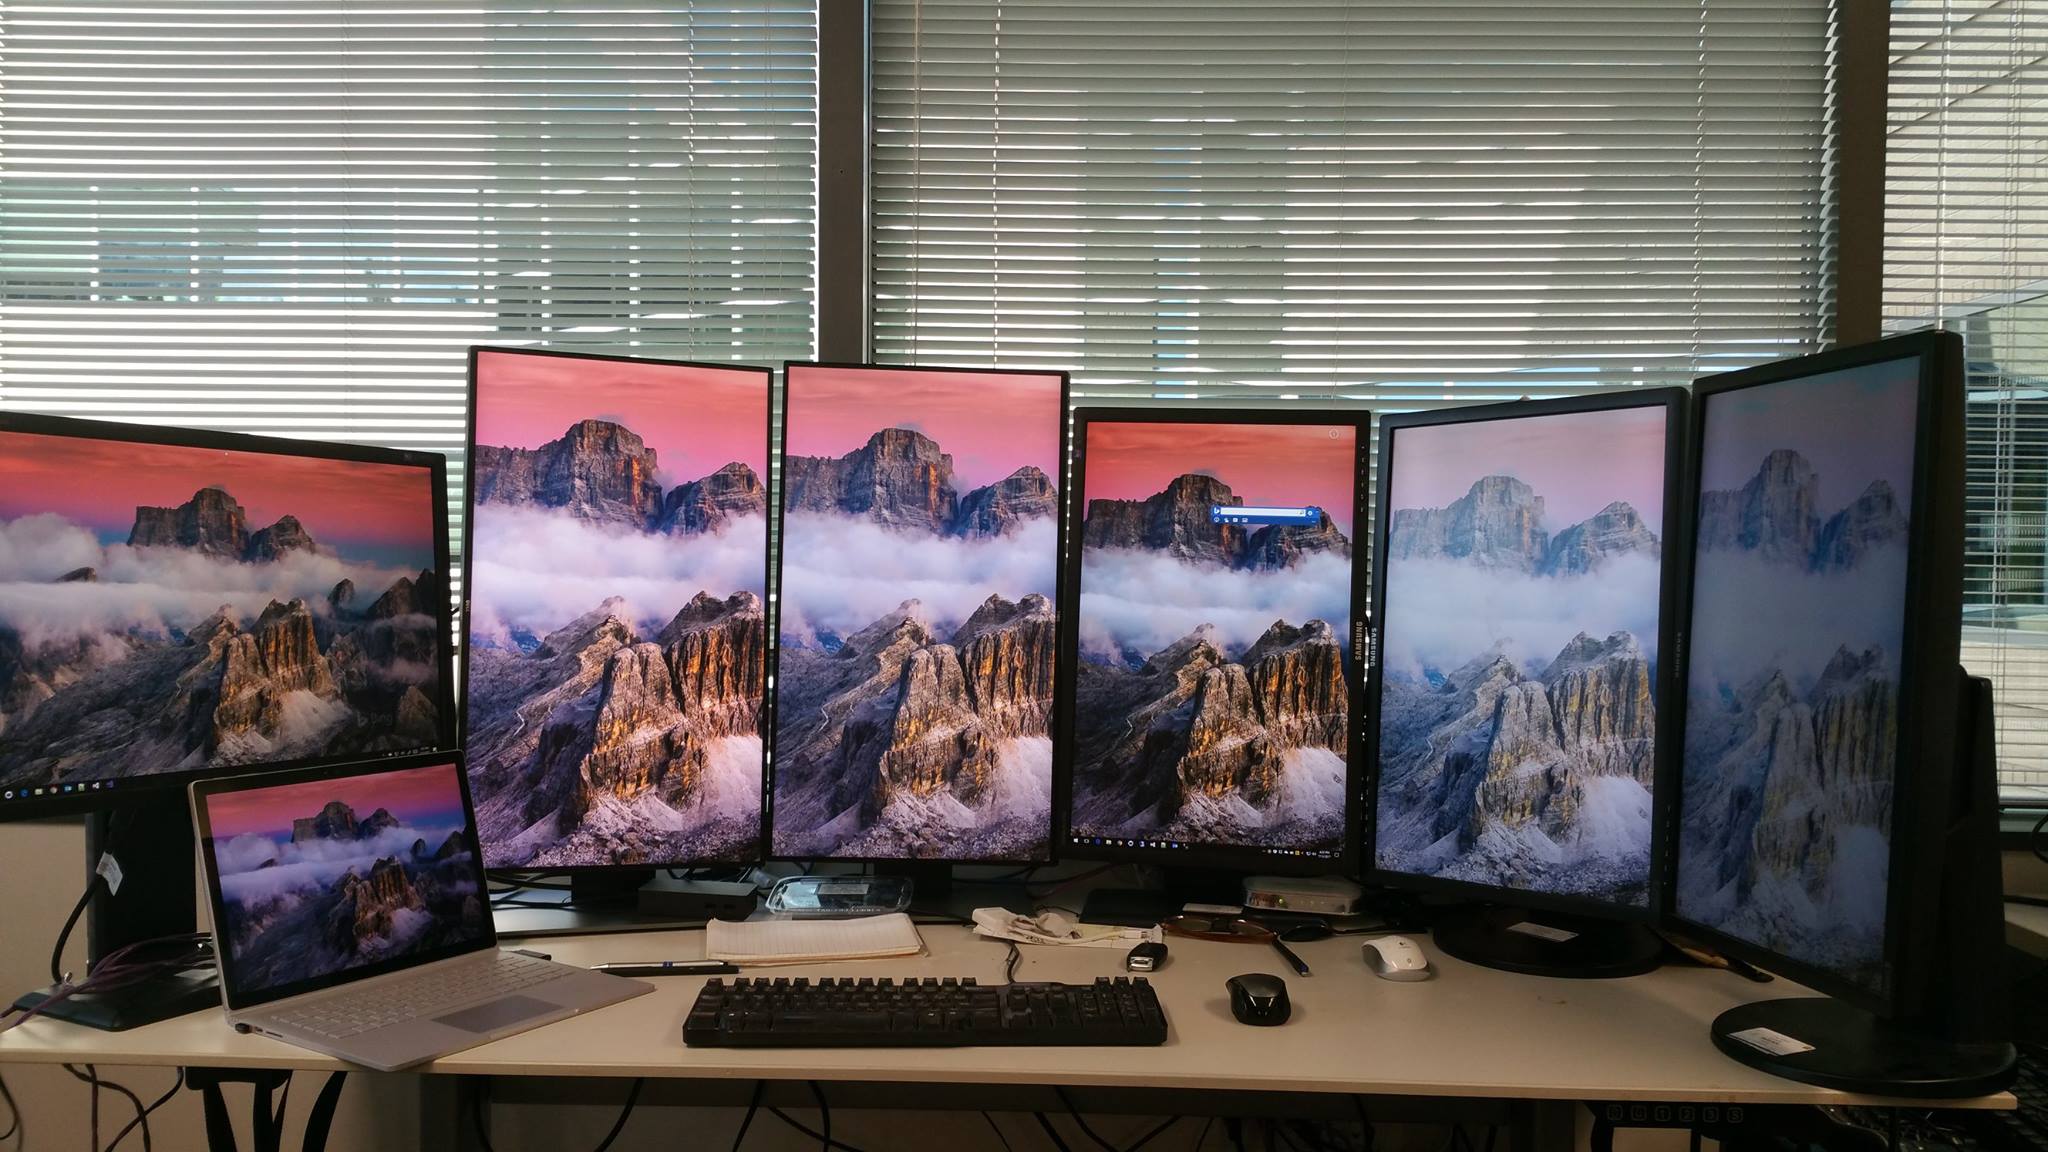 Enough monitors?